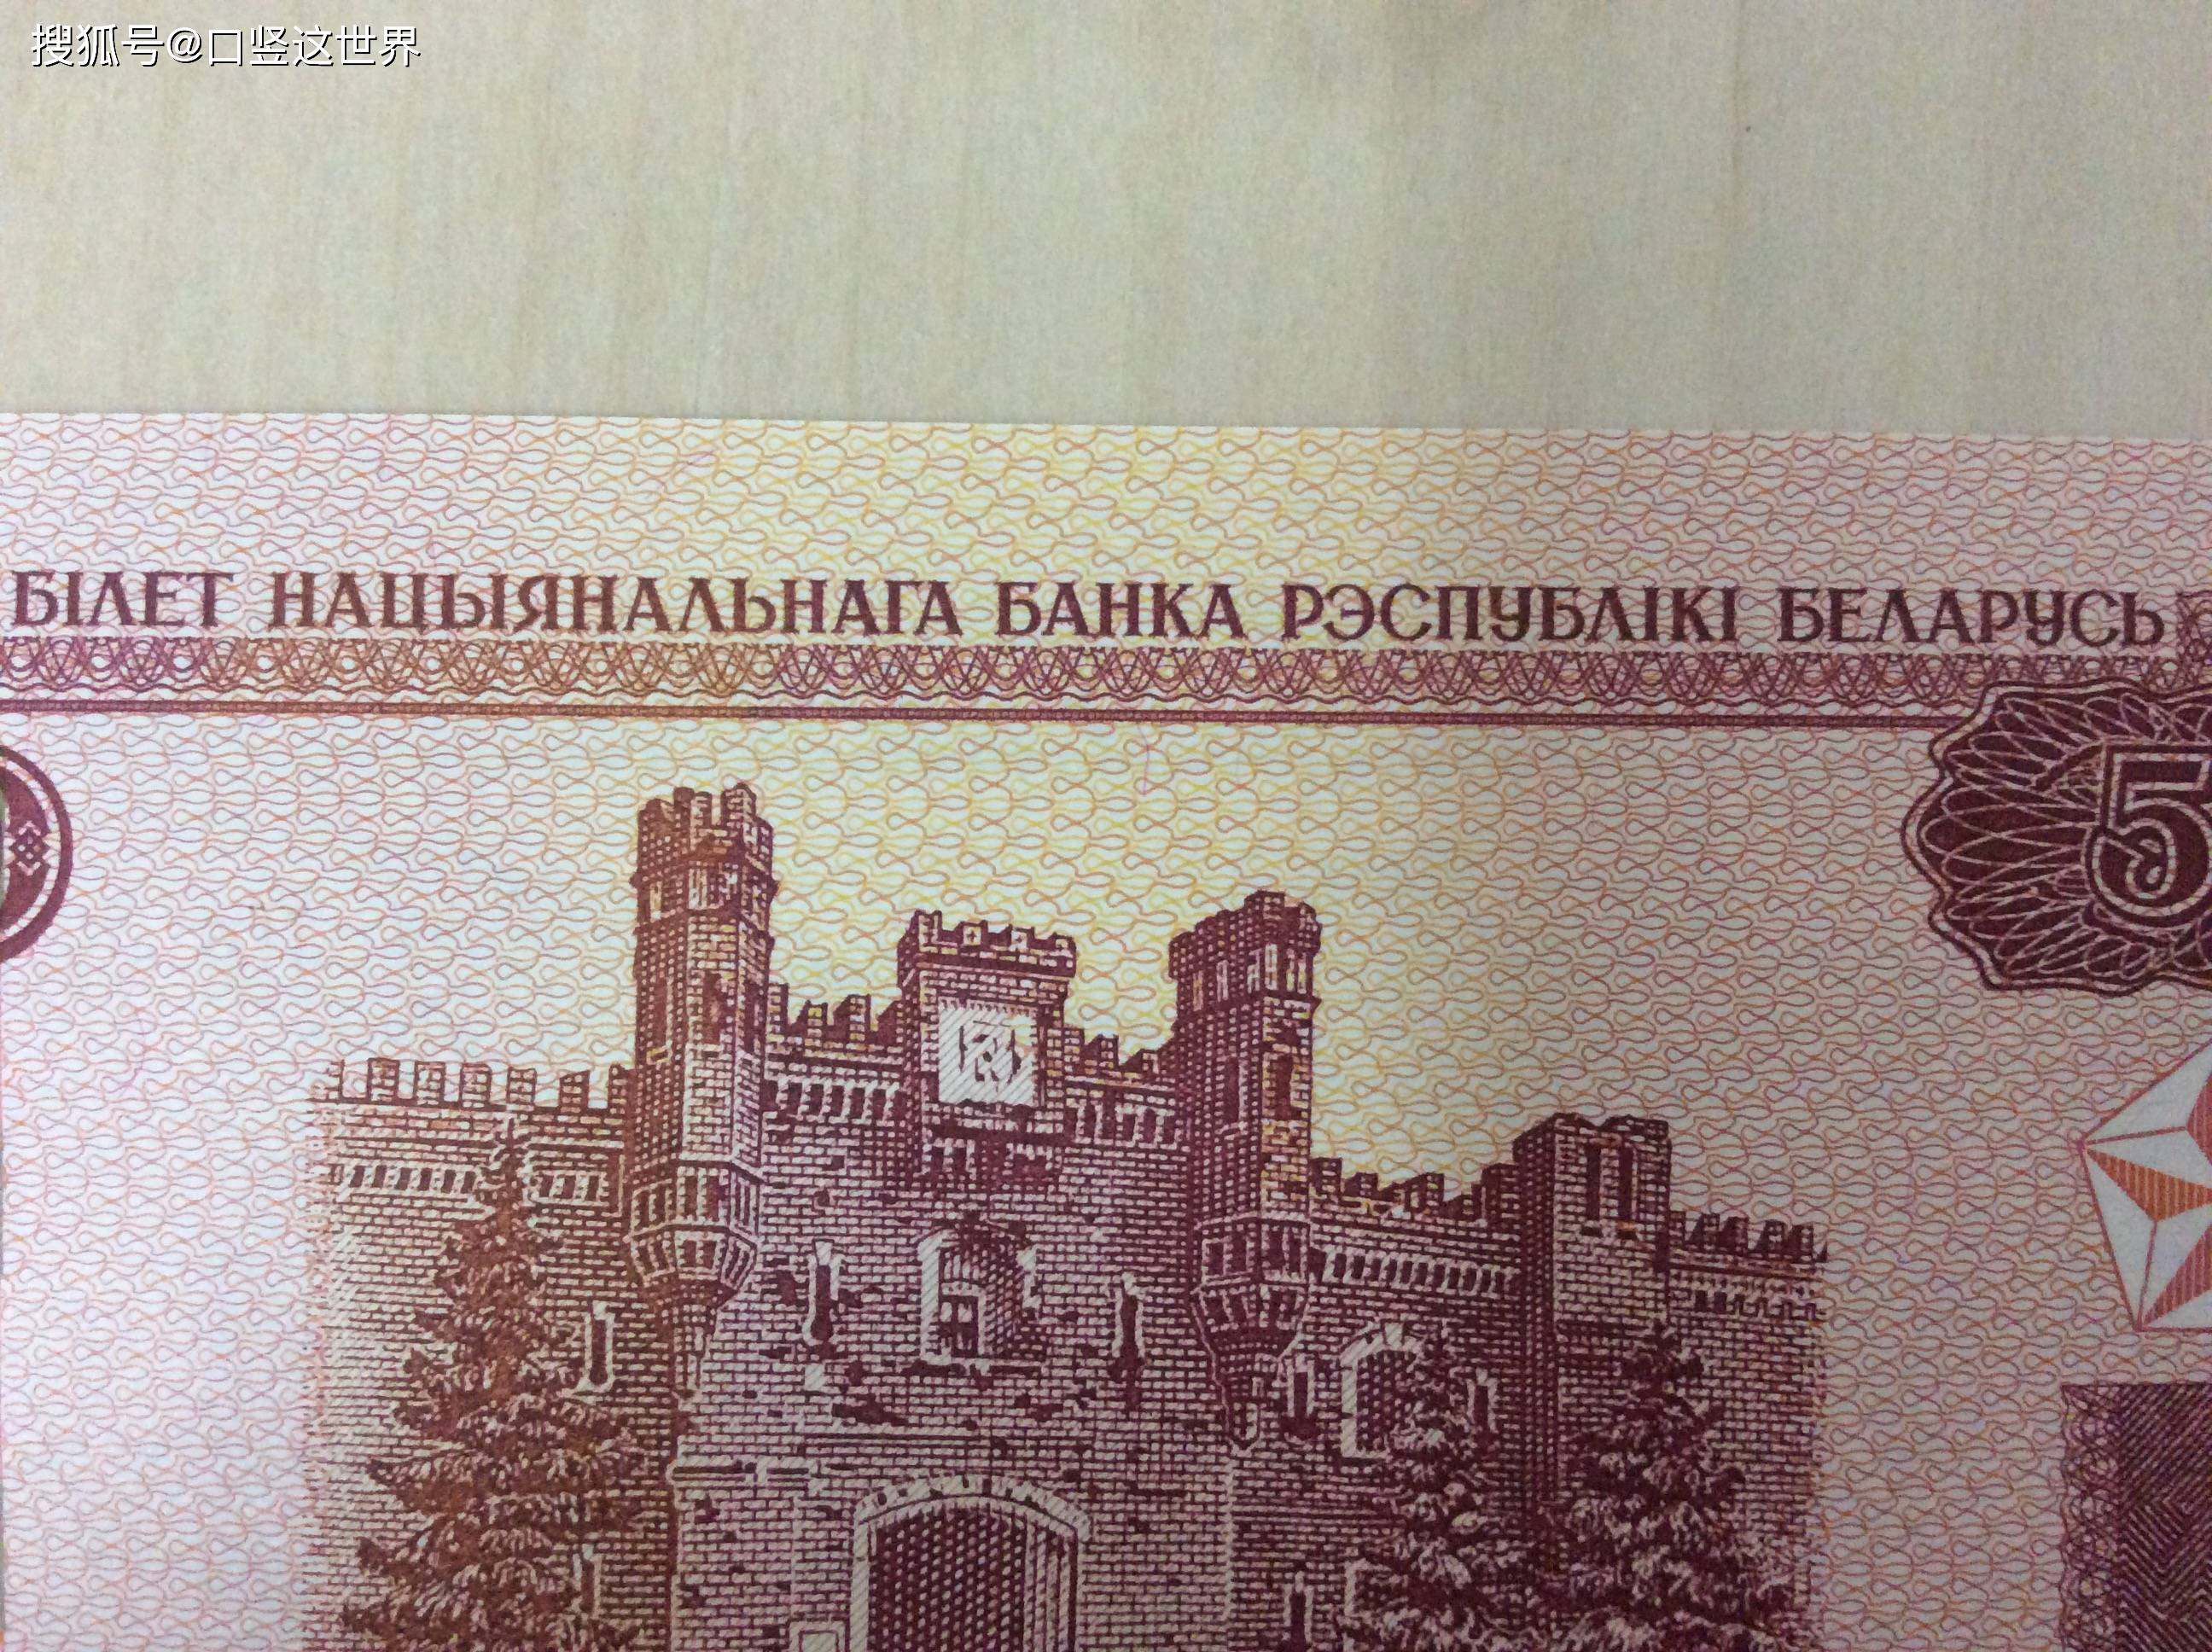 原创白俄罗斯的货币50卢布